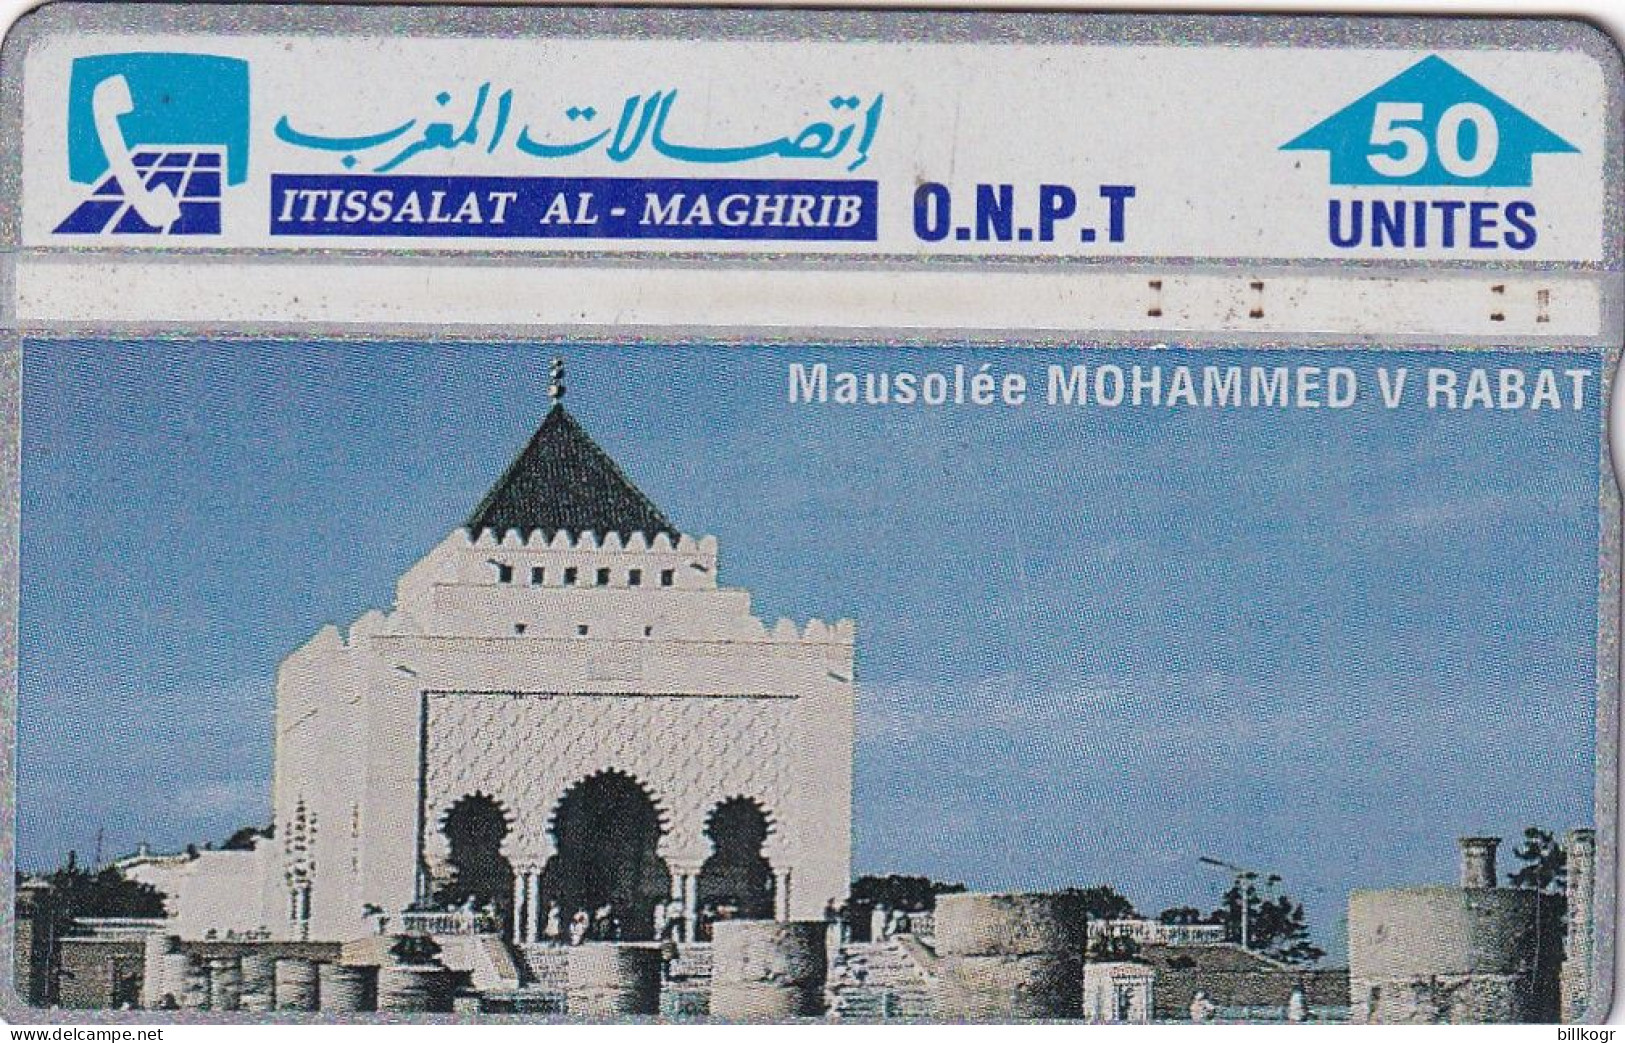 MOROCCO(L&G) - Mausoleum Of Mohammed V/Rabat(50 Units), CN : 305A, Used - Maroc